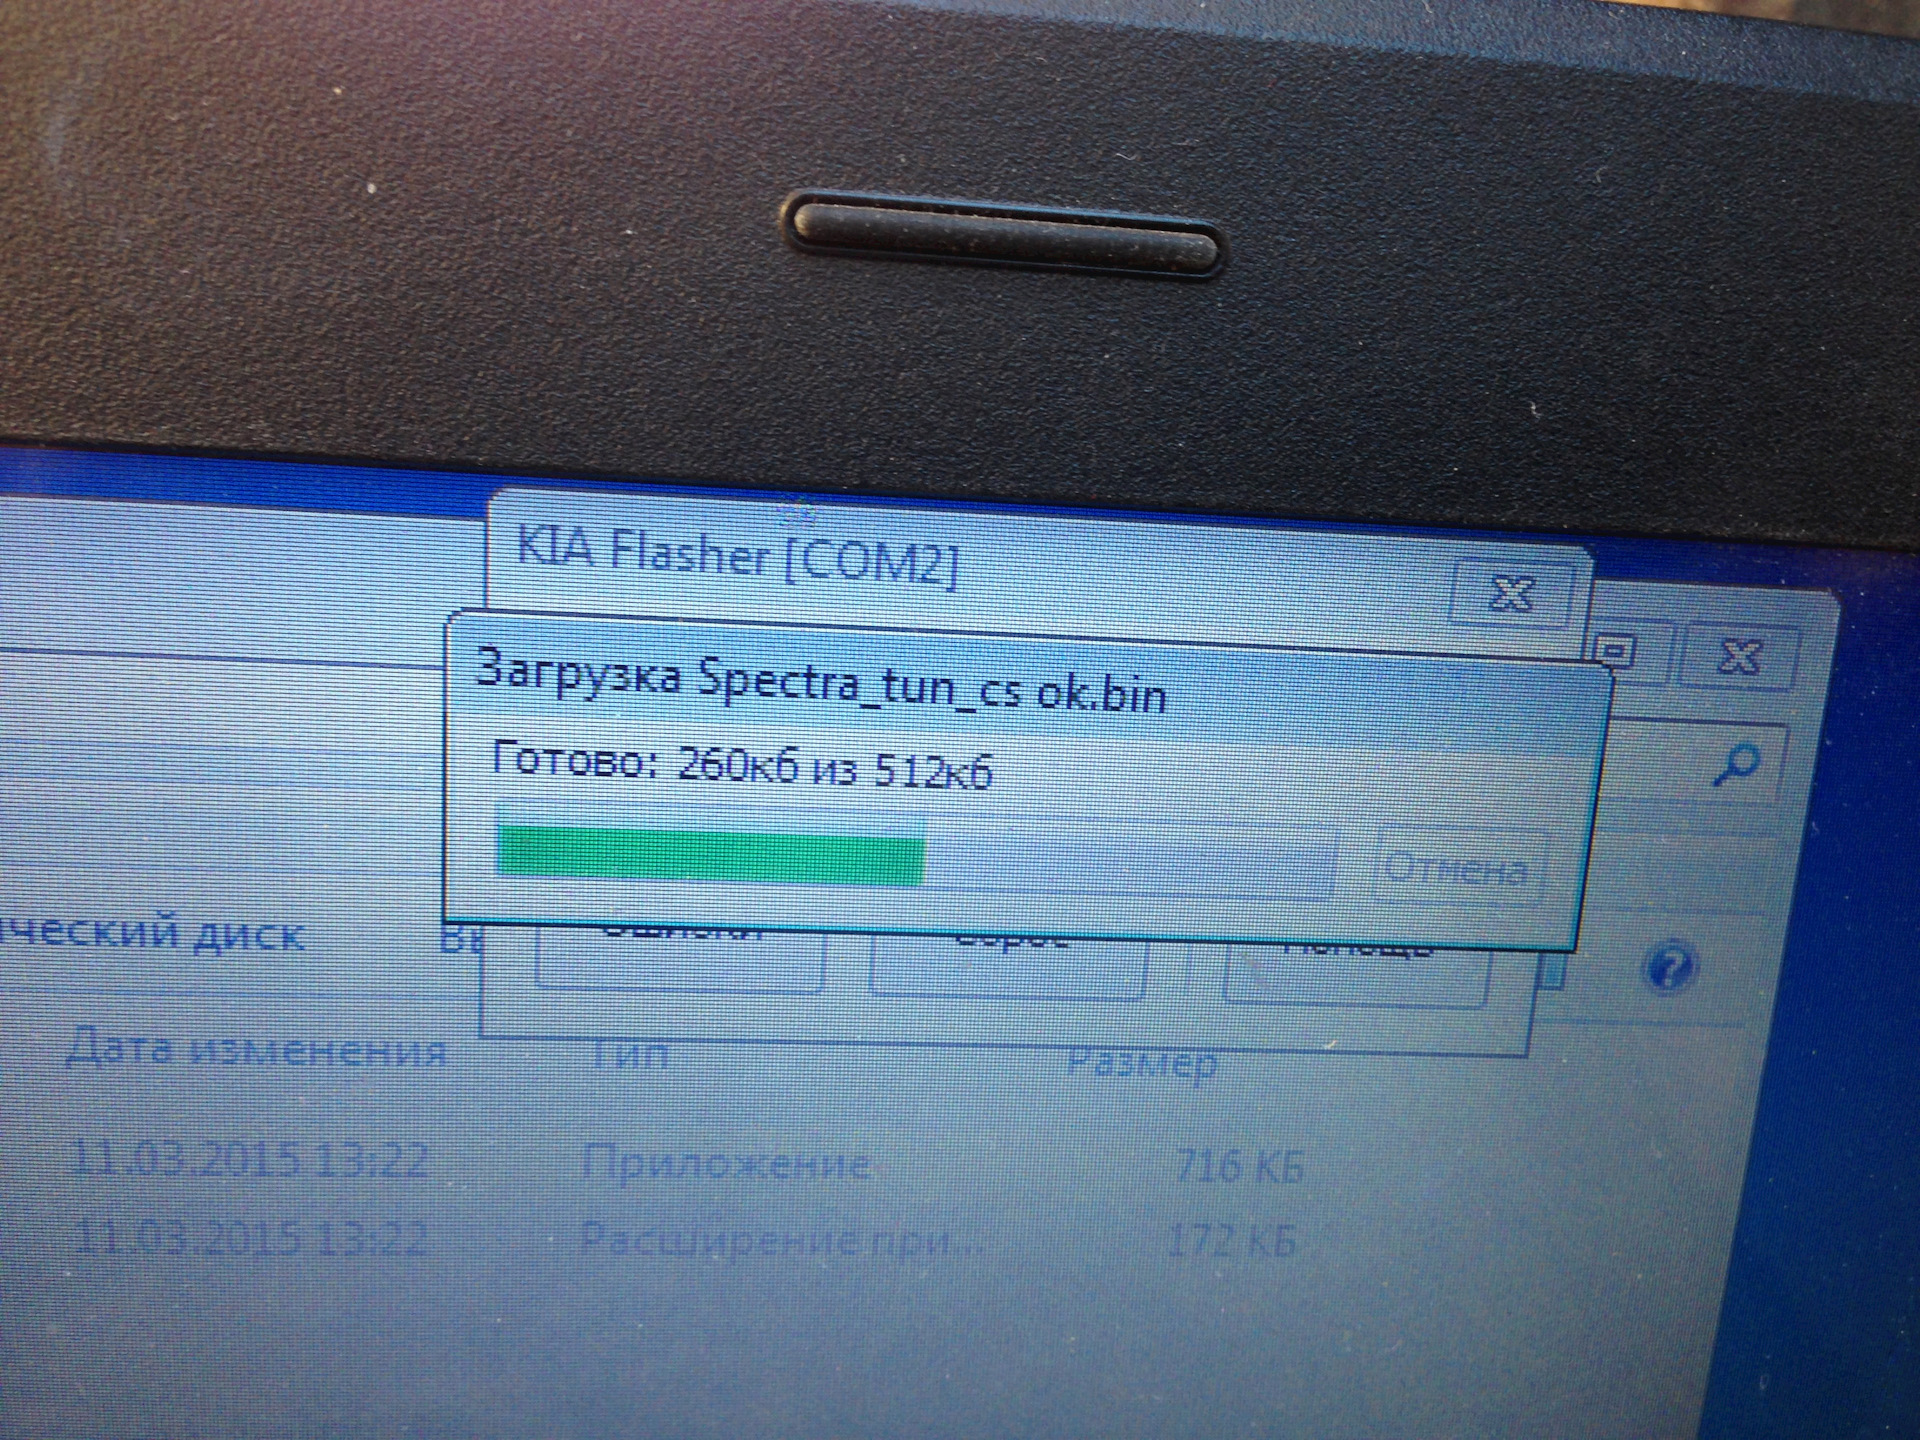 Загрузка спектрум. Kia flasher под Windows 7.